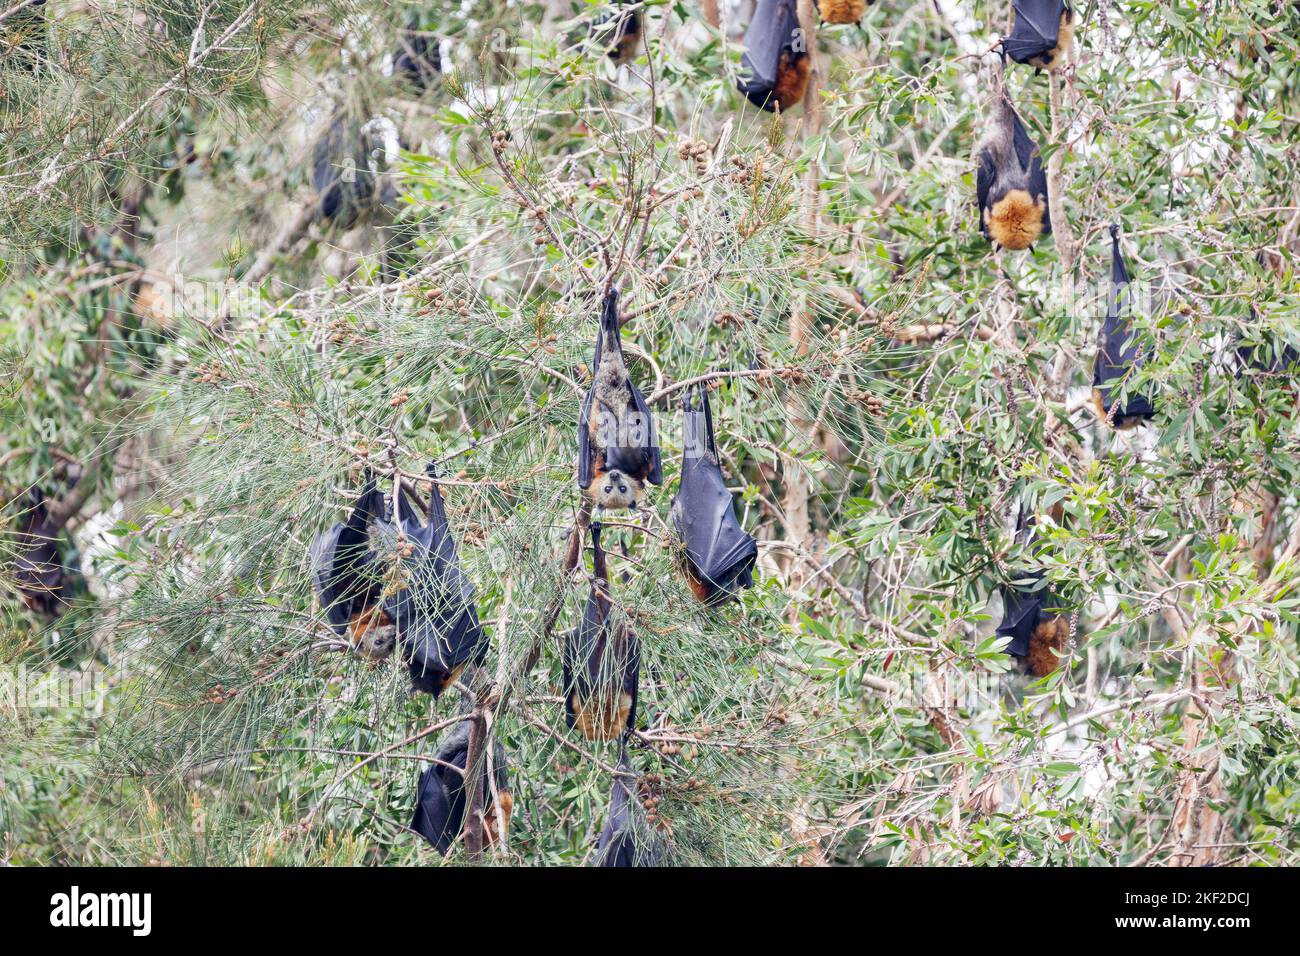 La volpe volante dalla testa grigia (Pteropus poliocephalus) è un megabat originario dell'Australia. Volpi volanti si nutrono del nettare e del polline dei fiori nativi An Foto Stock